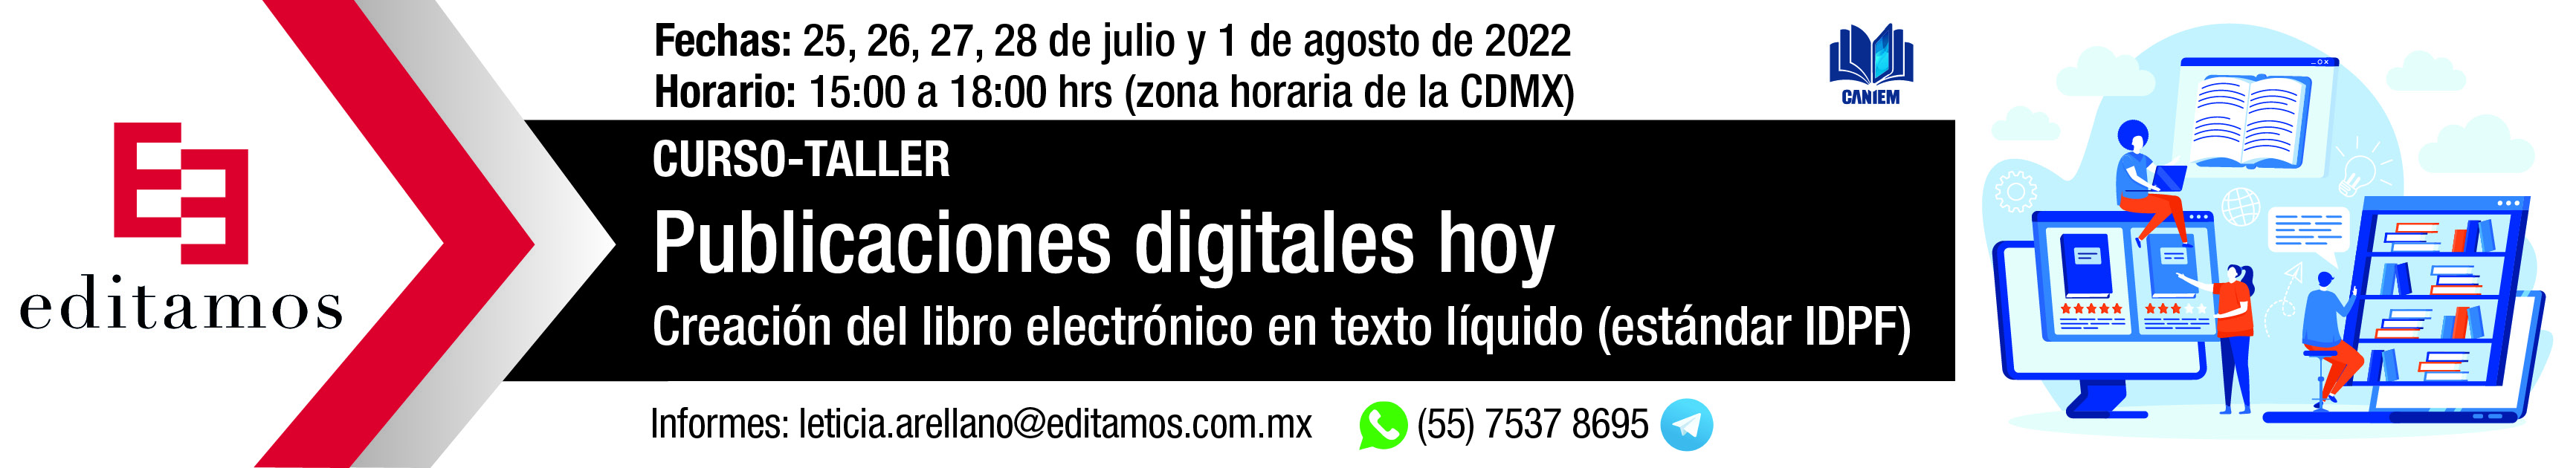 Publicaciones_digitales_Carrusel